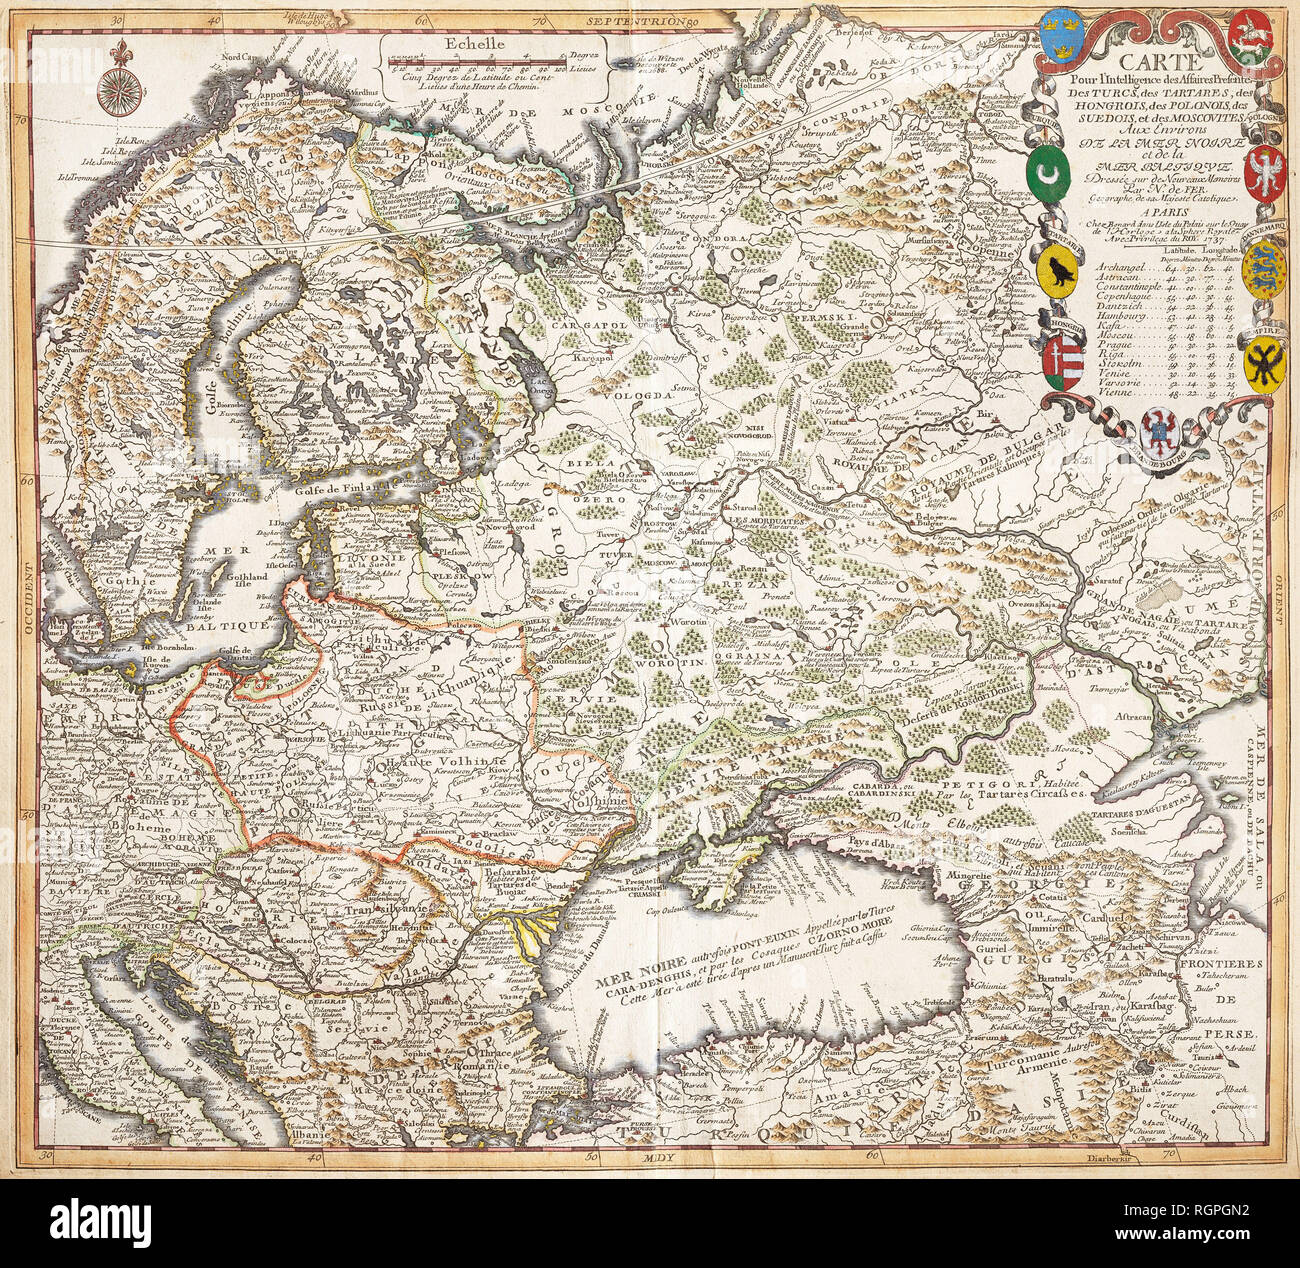 Karte für nachrichtendienstliche Angelegenheiten präsentiert die Türken, Tataren, Ungarn, Polen, Schweden und die Moskauer In der Umgebung von das Schwarze Meer und die Ostsee. Nicolas de Fer (Paris, 1737) Stockfoto